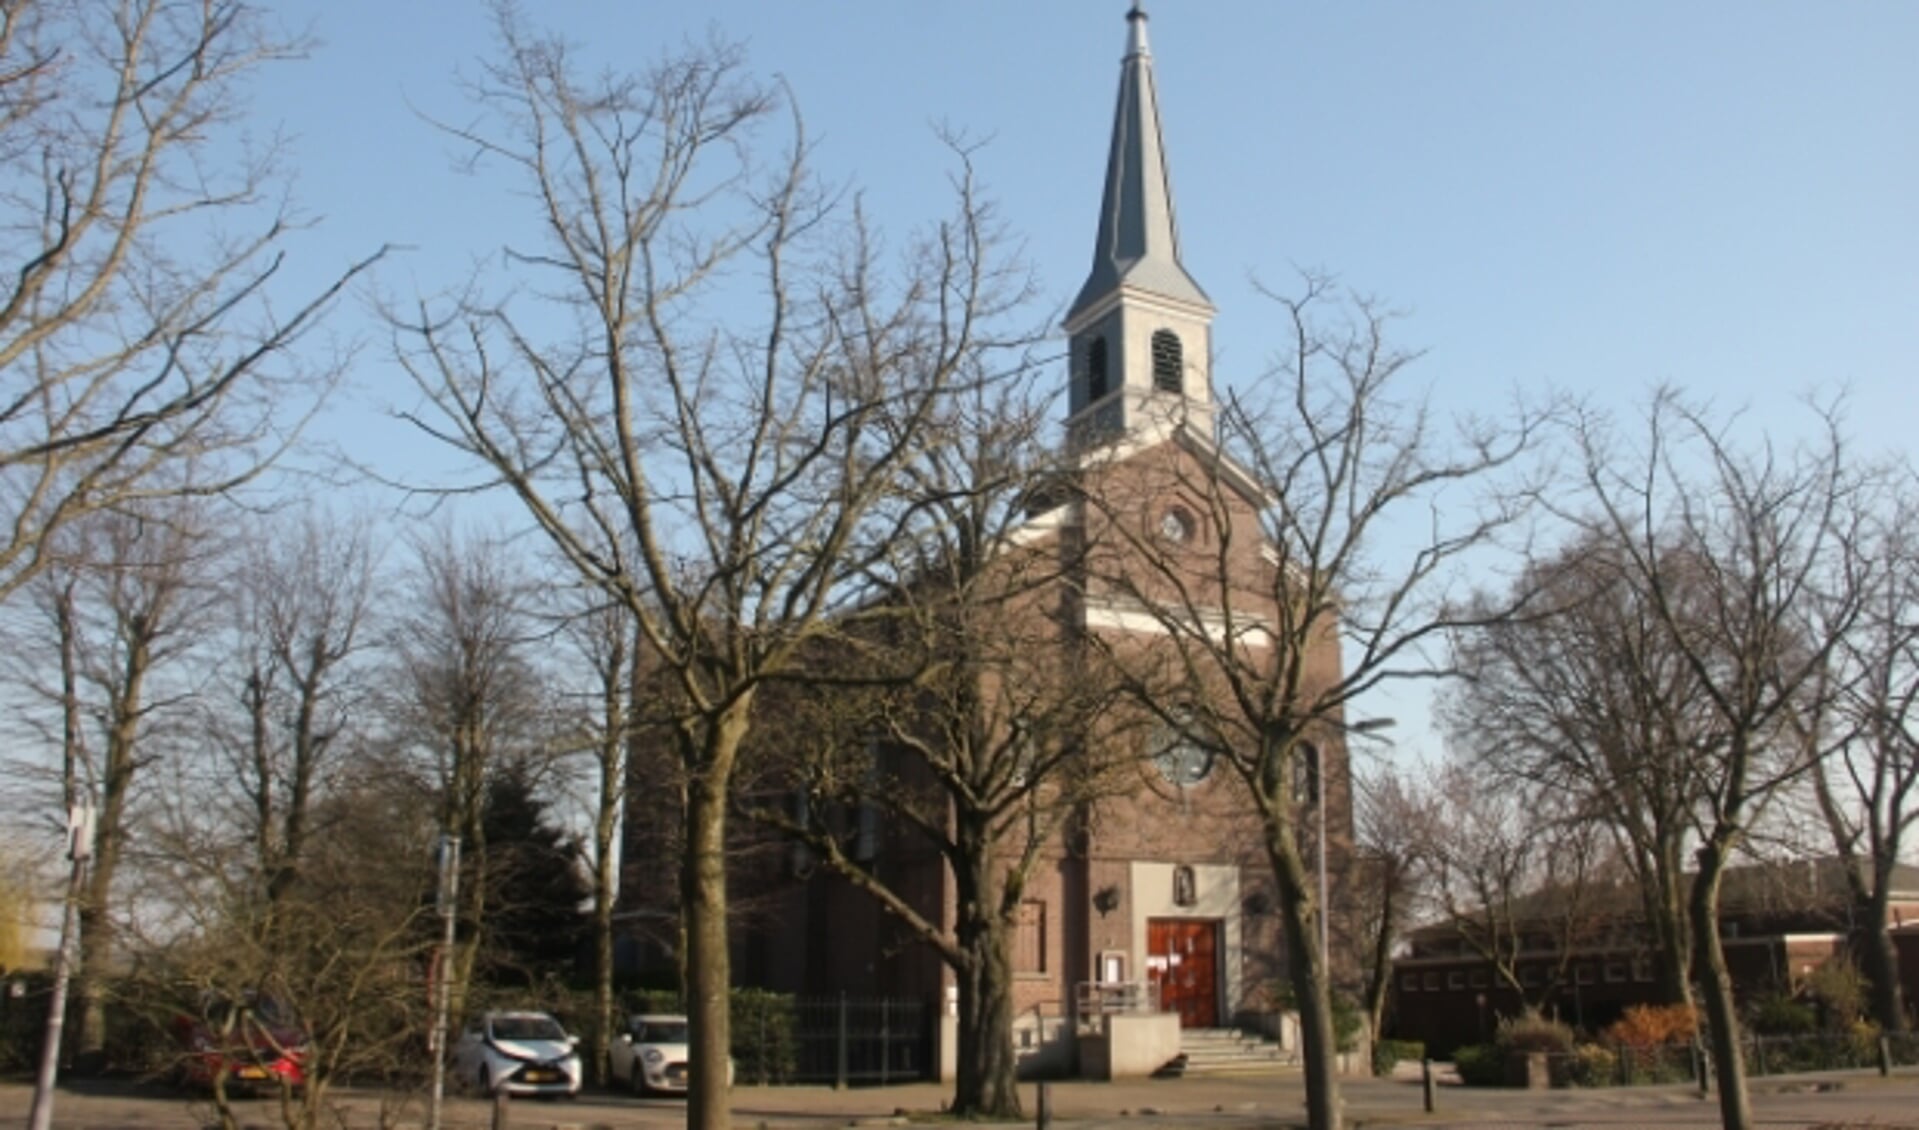 In de OLV Visitatie kerk in Bleiswijk worden ook video-opnames gemaakt. (Foto: Aad v/d Broek)